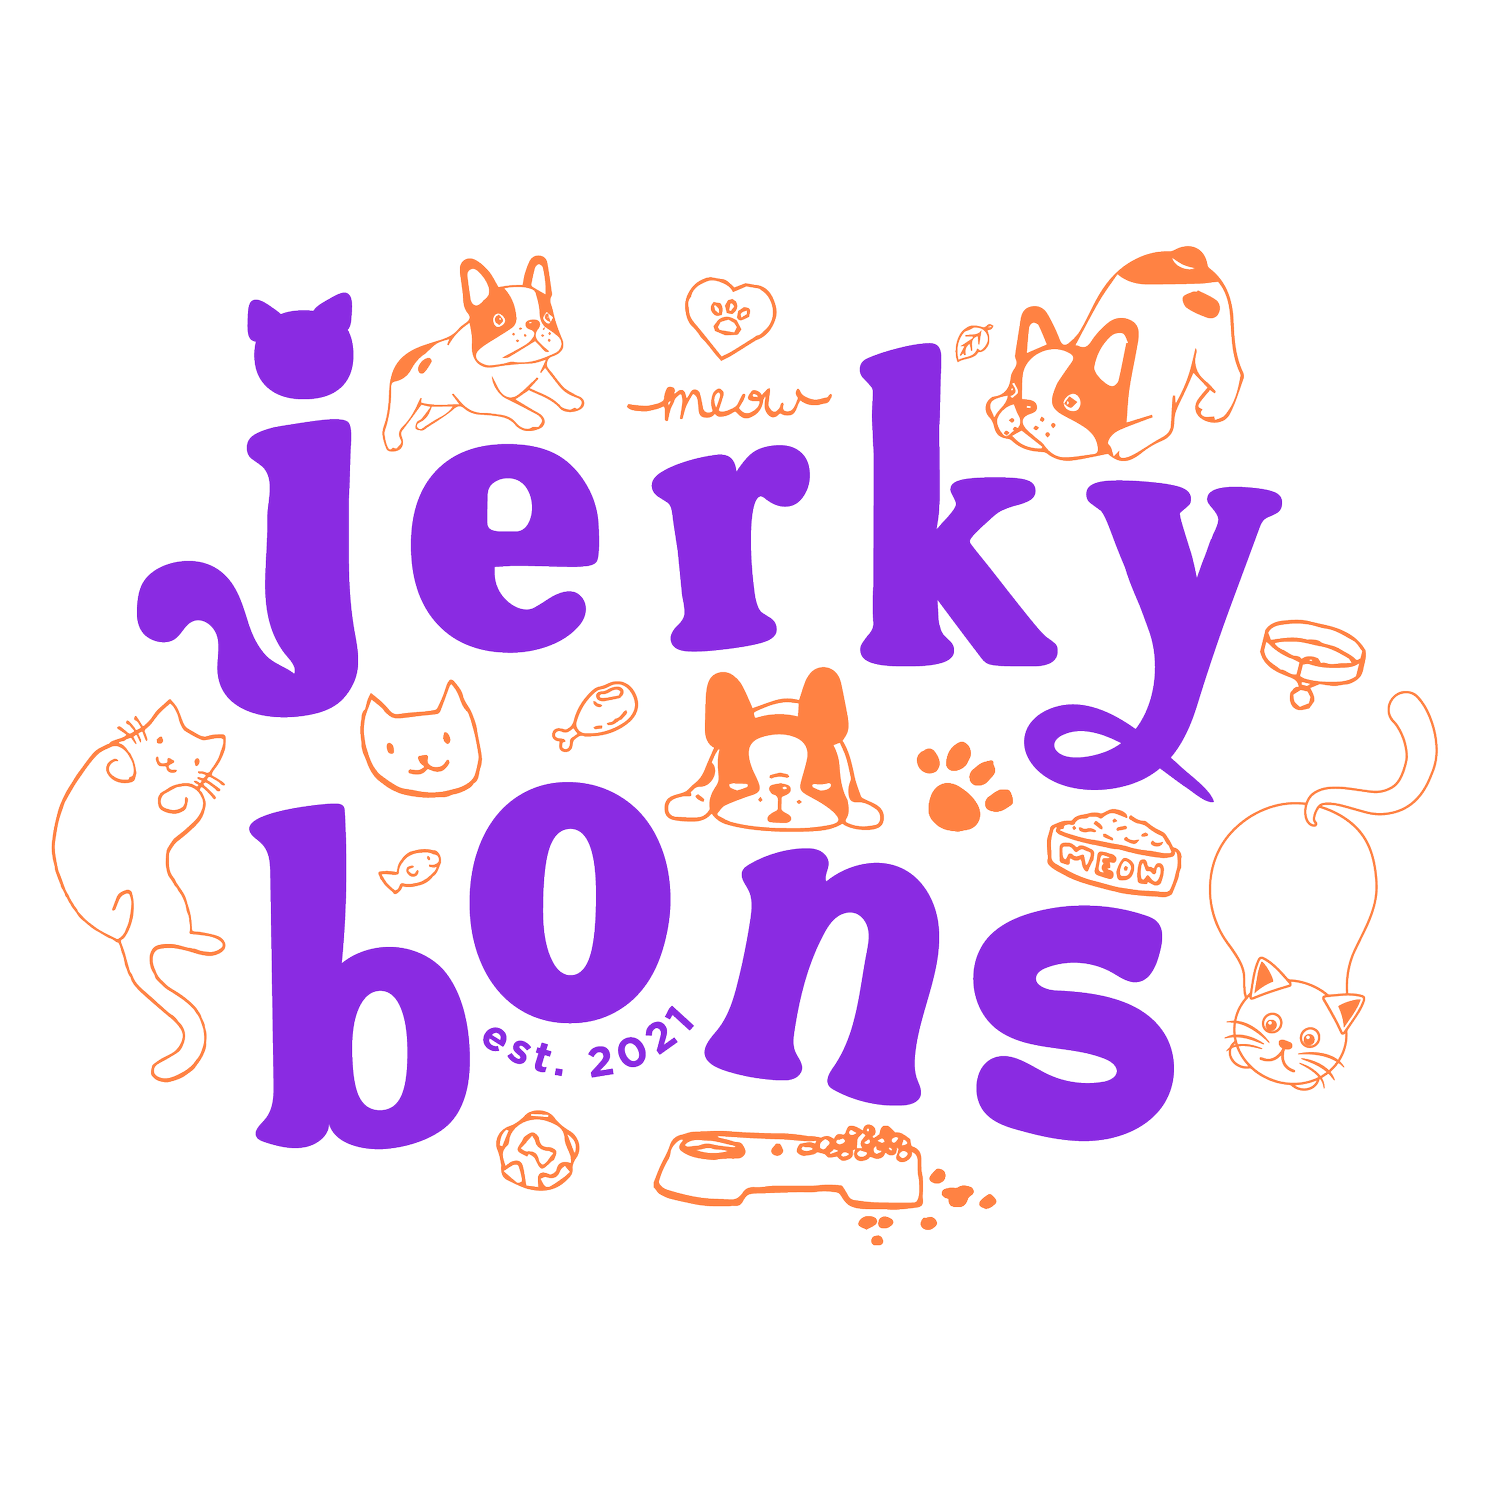 JerkyBons